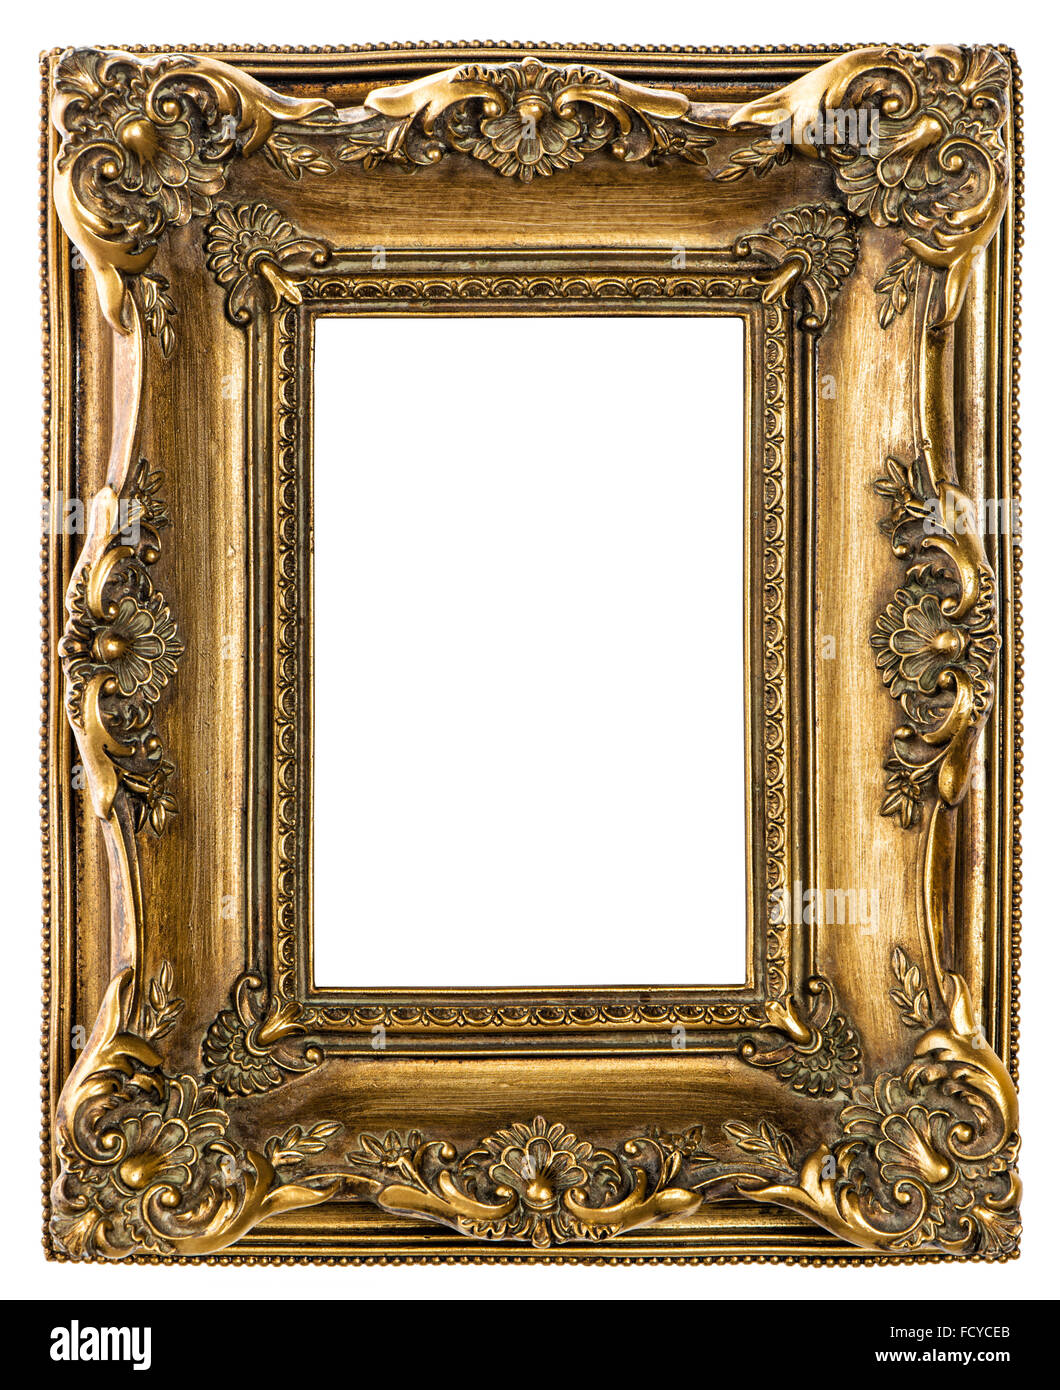 Marco de imagen barroca de oro sobre fondo blanco. Objeto de estilo vintage Foto de stock